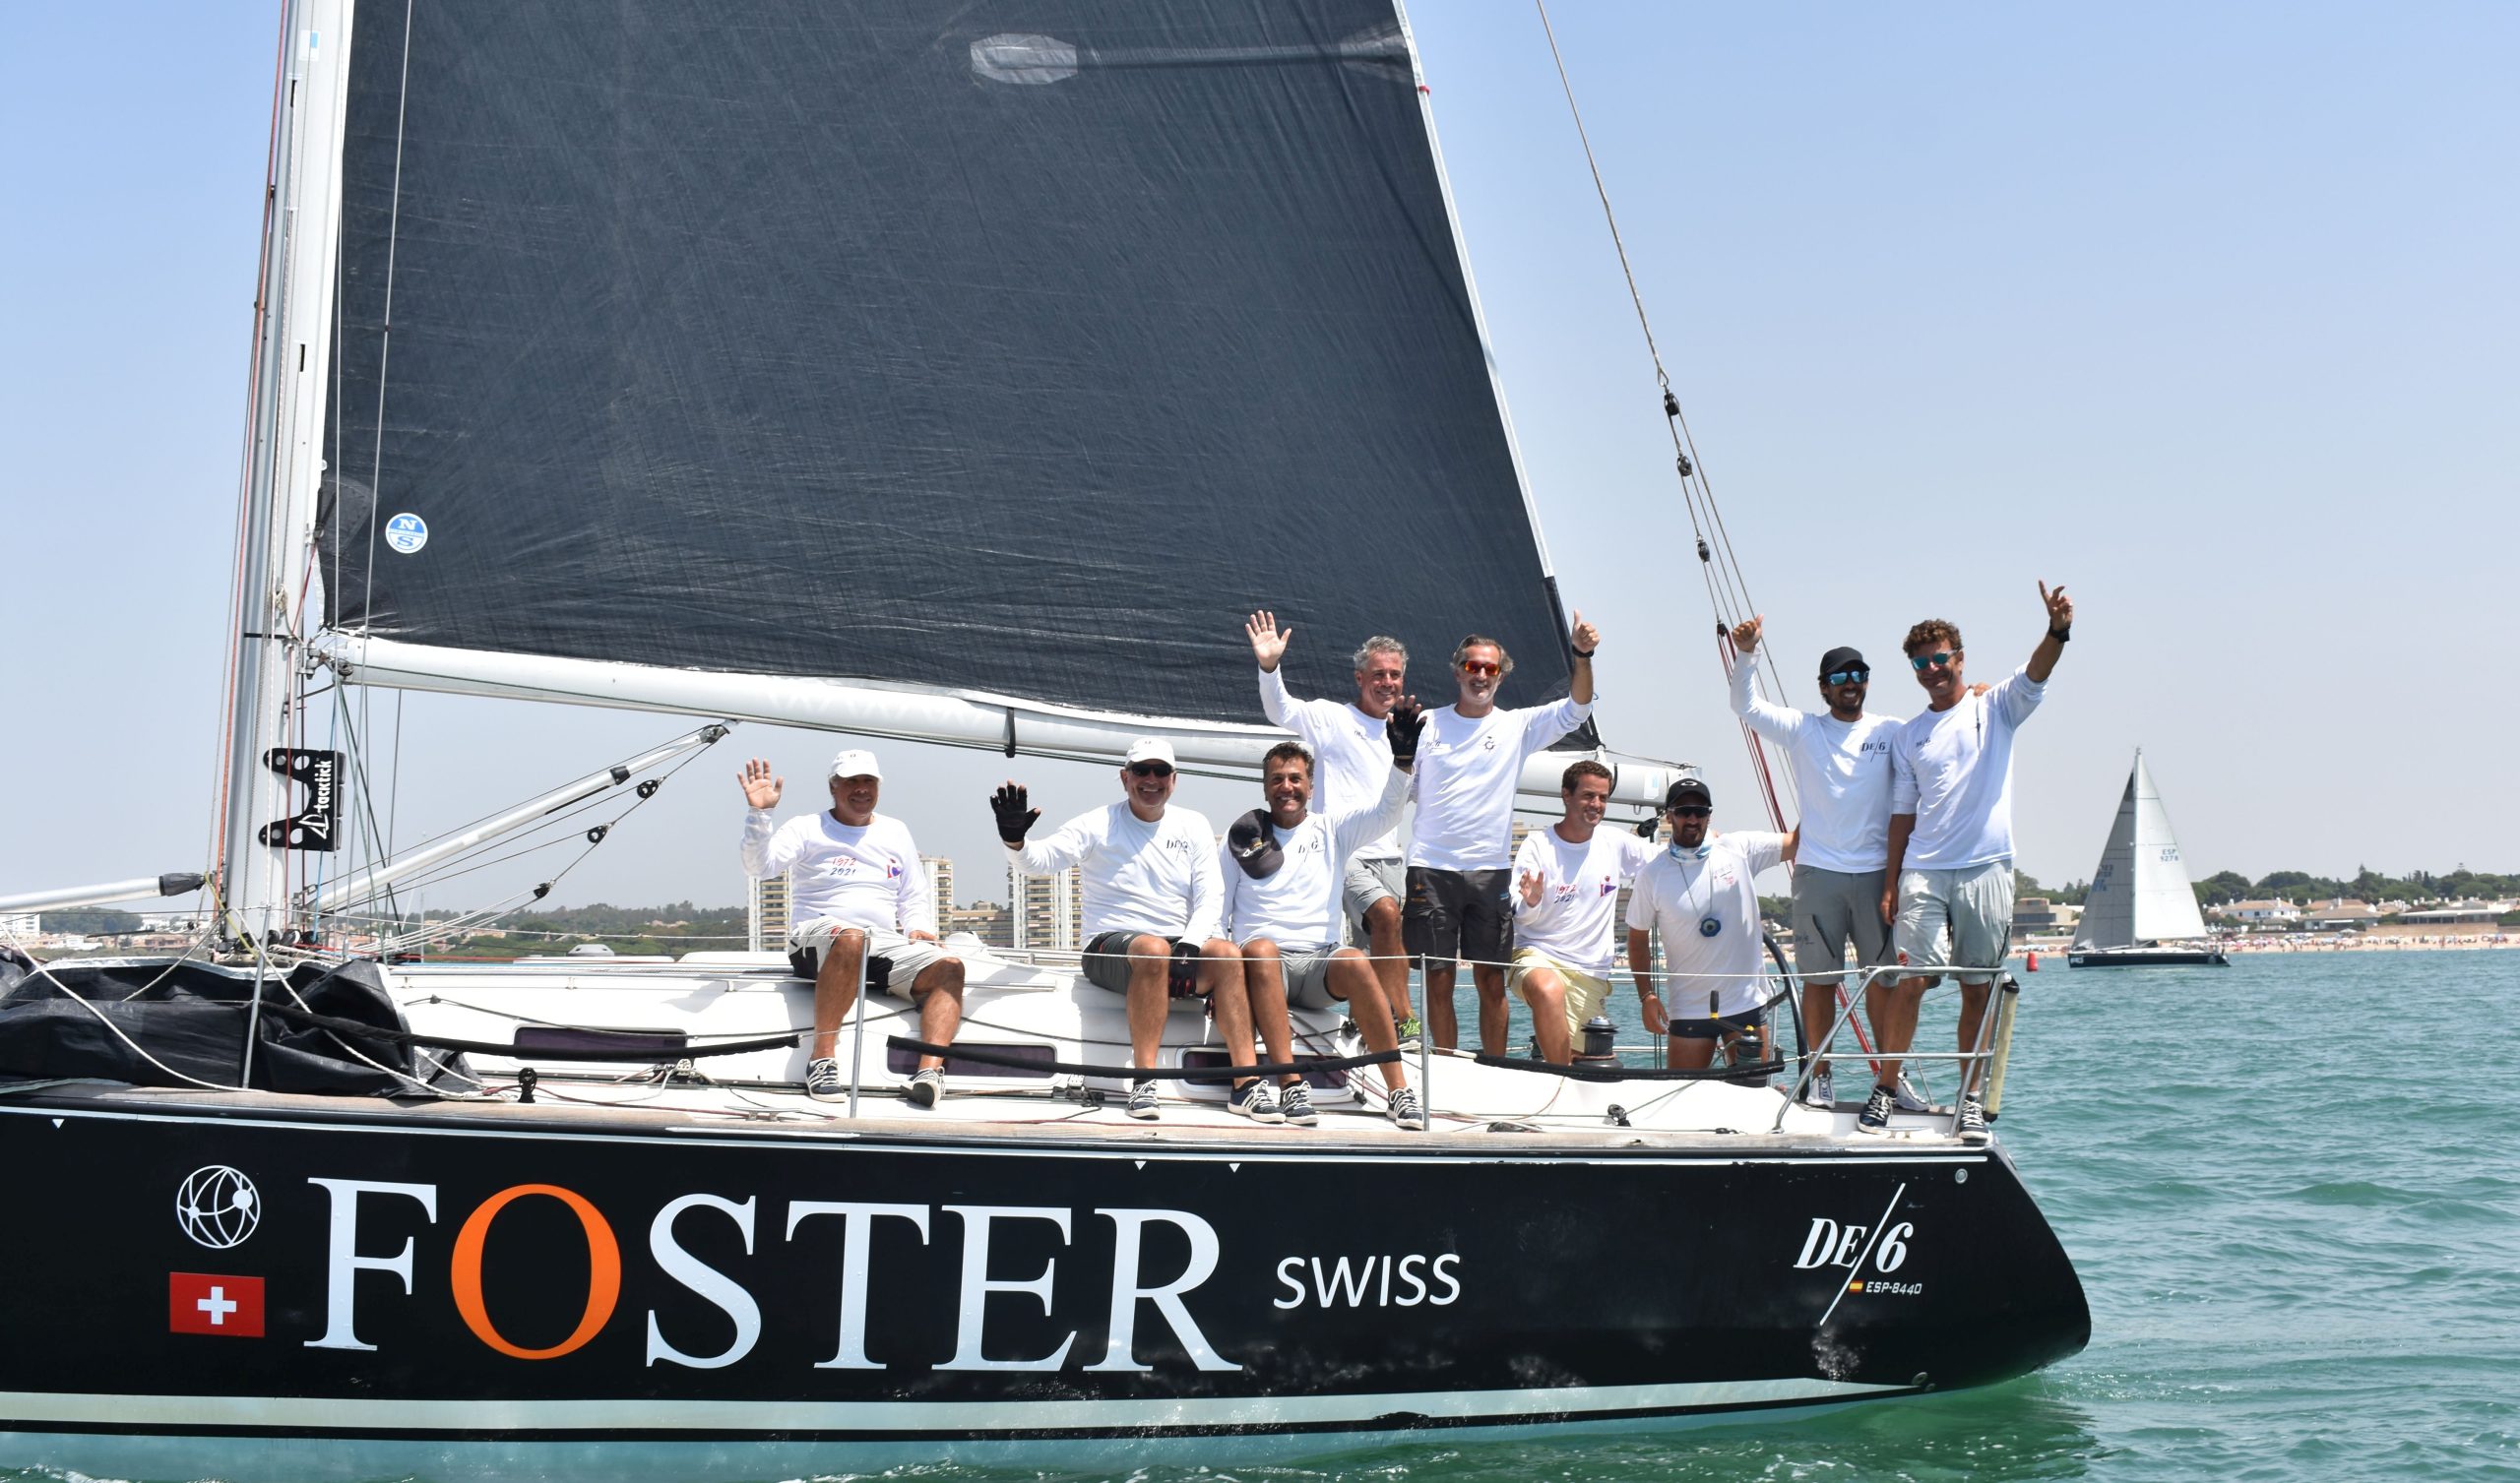 La embarcación onubense Foster Swiss campeón 002